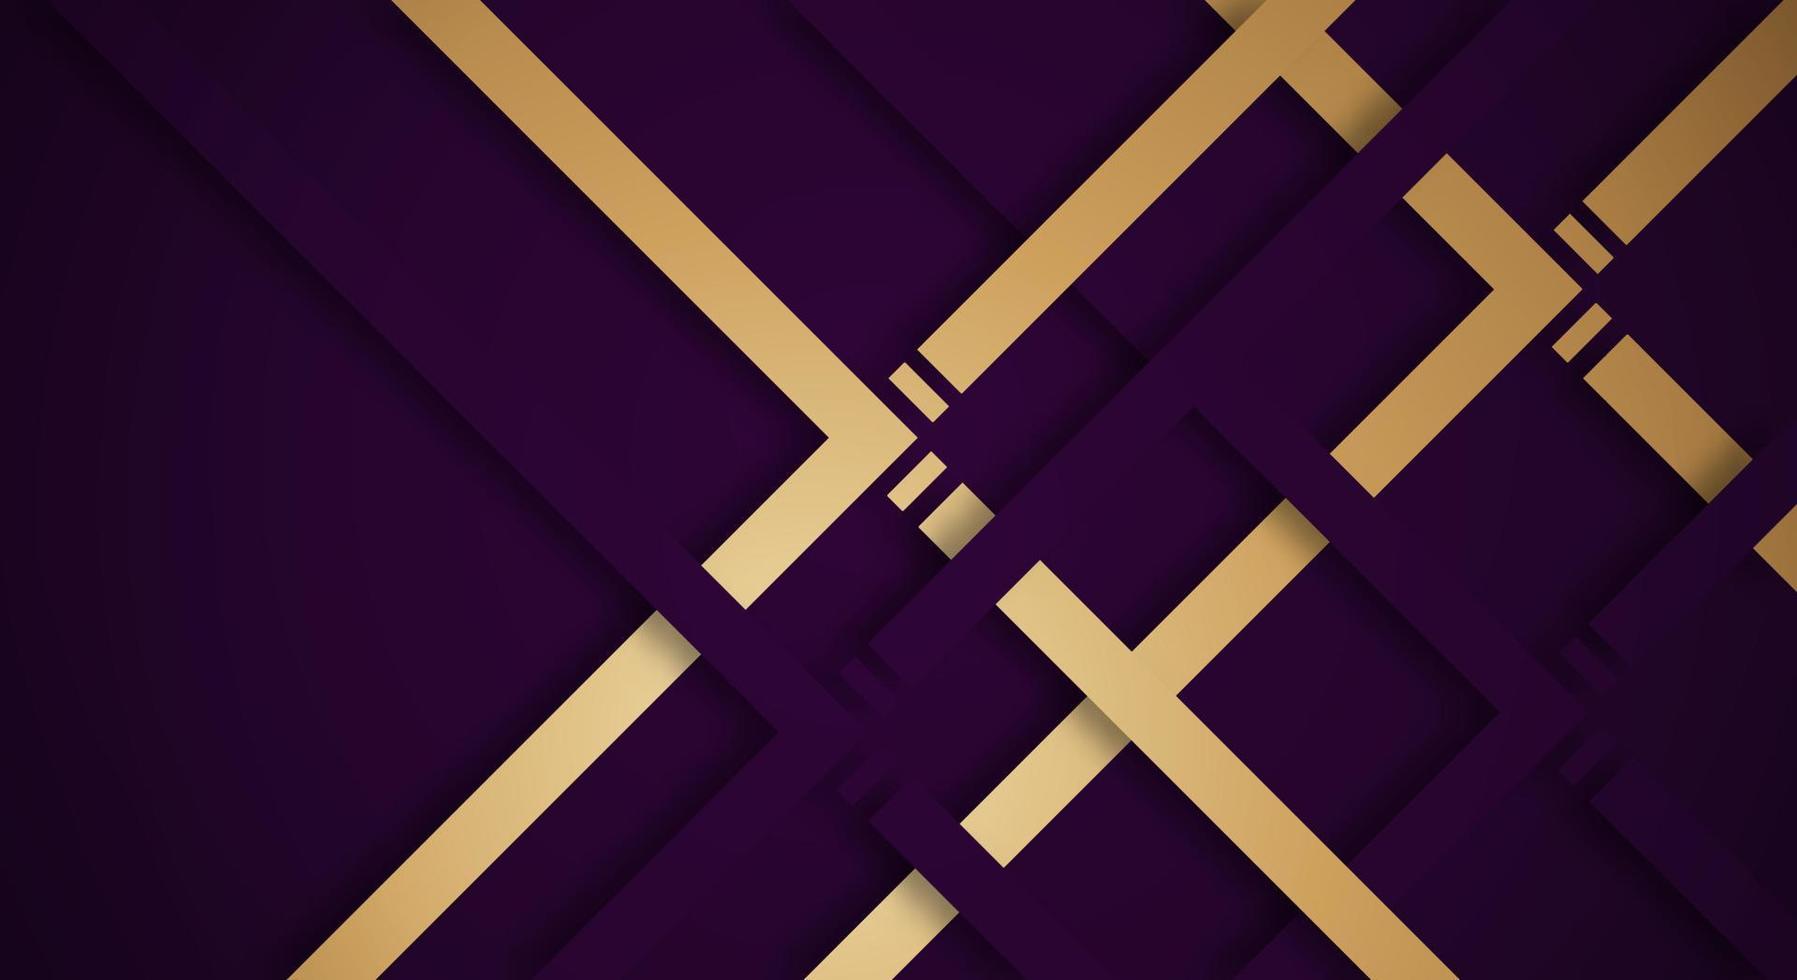 arrière-plan abstrait 3d violet foncé avec des lignes dorées et violettes style papier découpé texturé. utilisable pour la mise en page Web décorative, l'affiche, la bannière, la brochure d'entreprise et la conception de modèles de séminaire vecteur